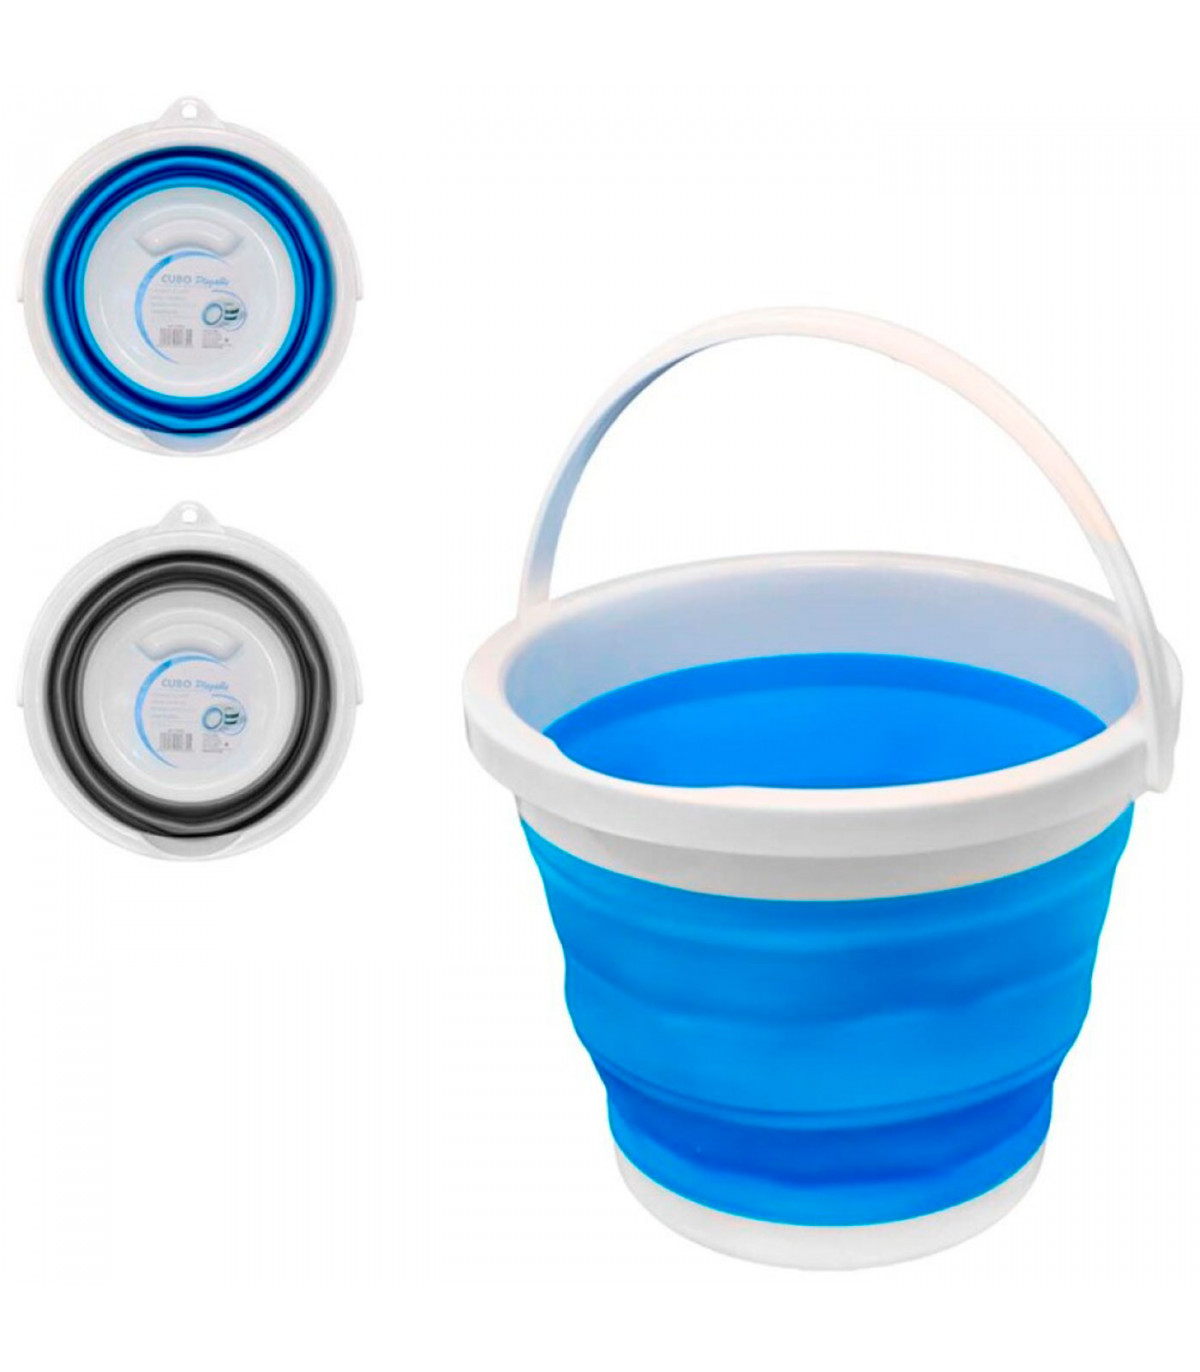 Cubo plegable de silicona con asa de color azul - Concepto Camper